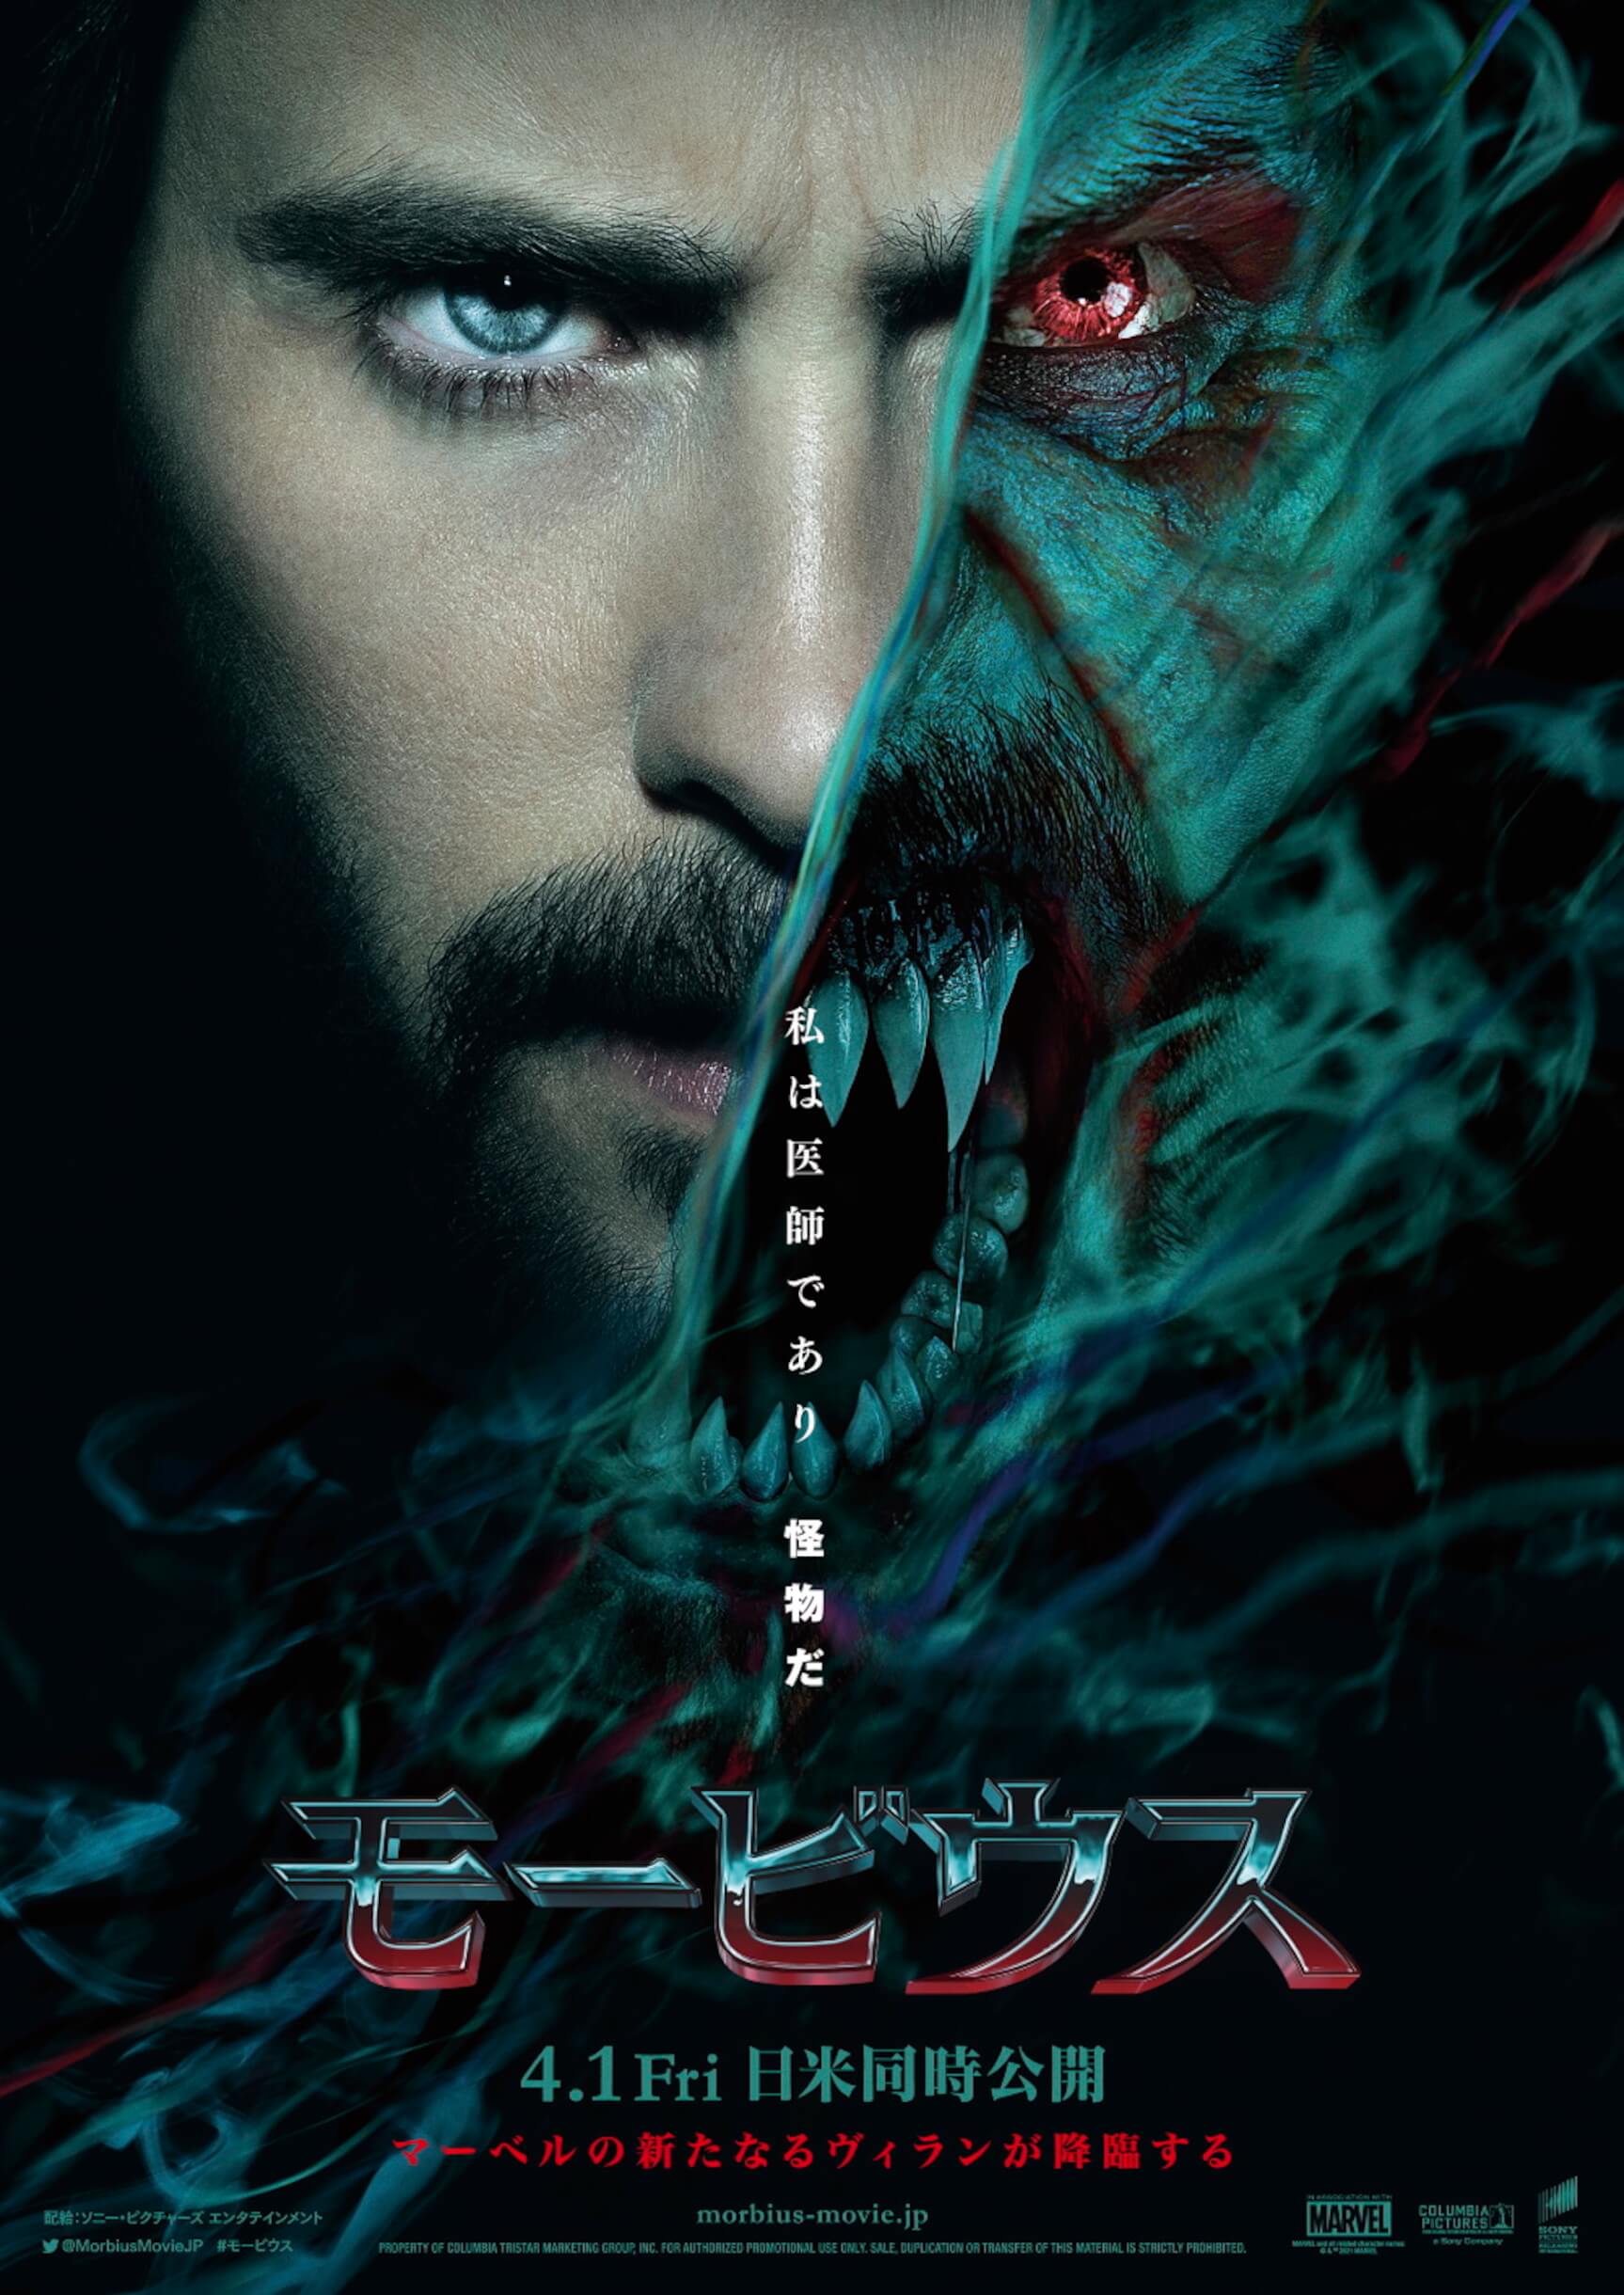 ジャレッド・レト主演、マーベル最新作『モービウス』が4月1日に日米同時公開決定！日本版ポスターも解禁 film220121-morbius-2